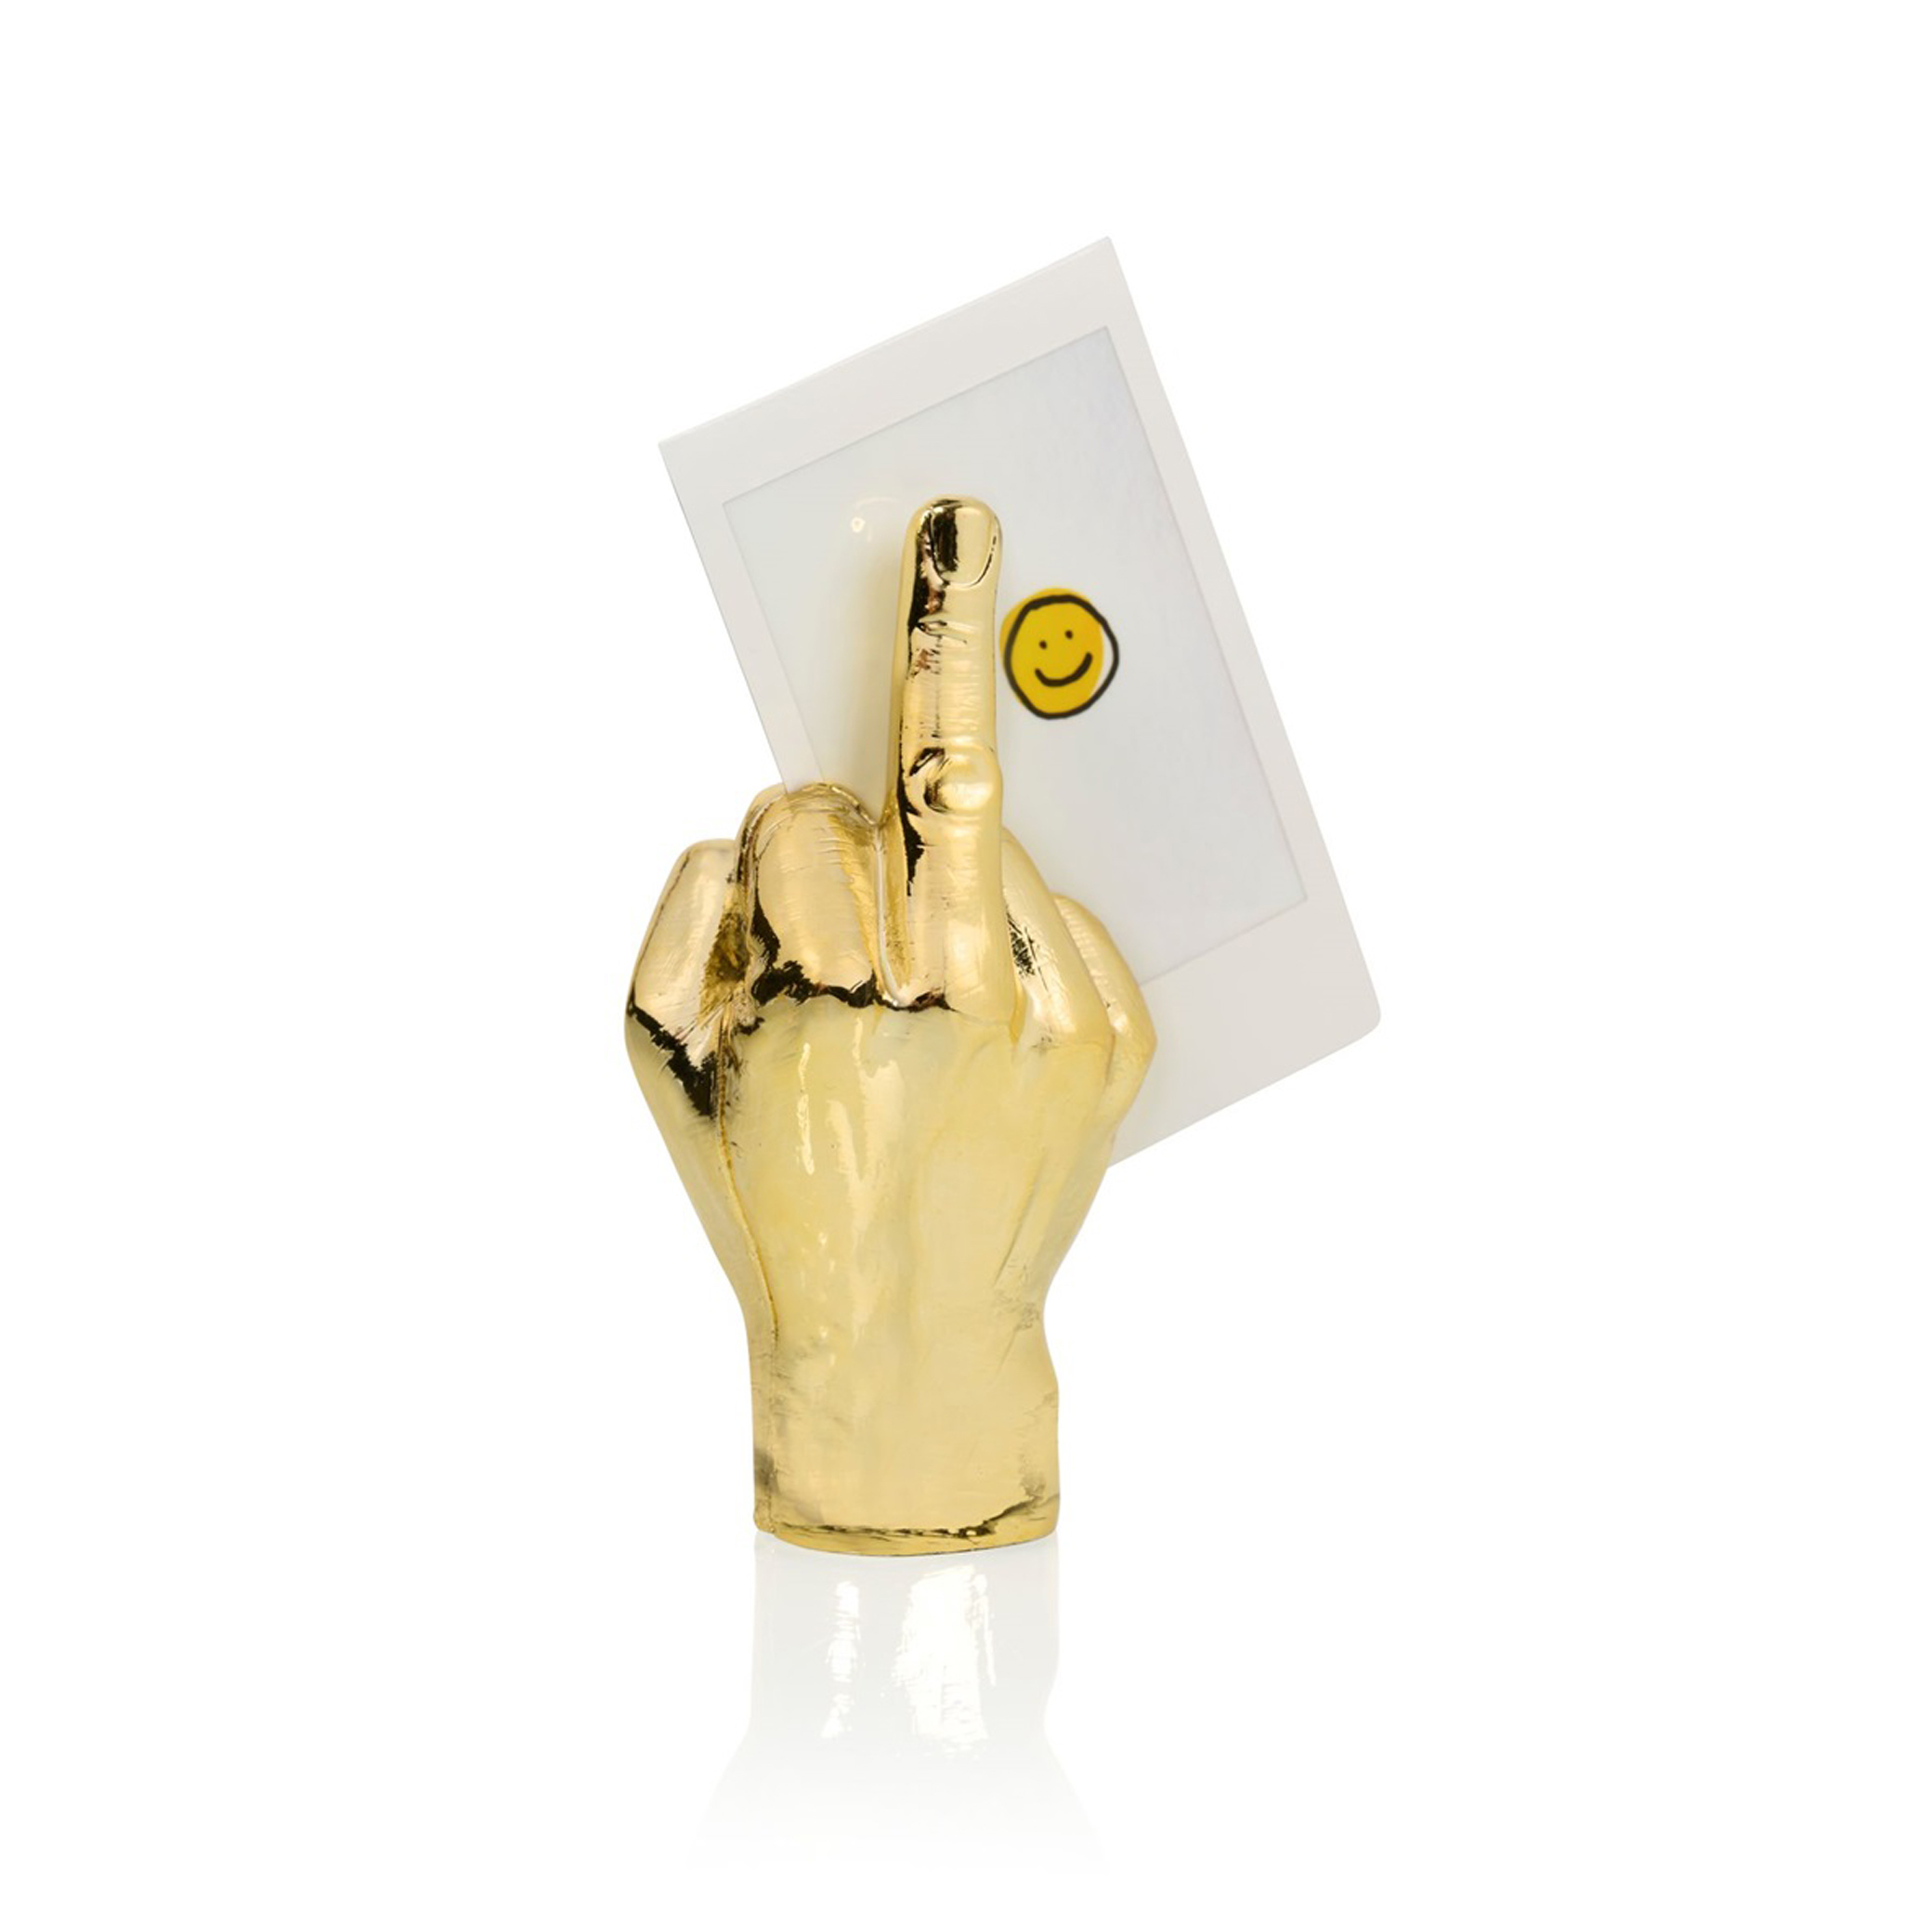 bitten-design-the-finger-photo-holder-gold